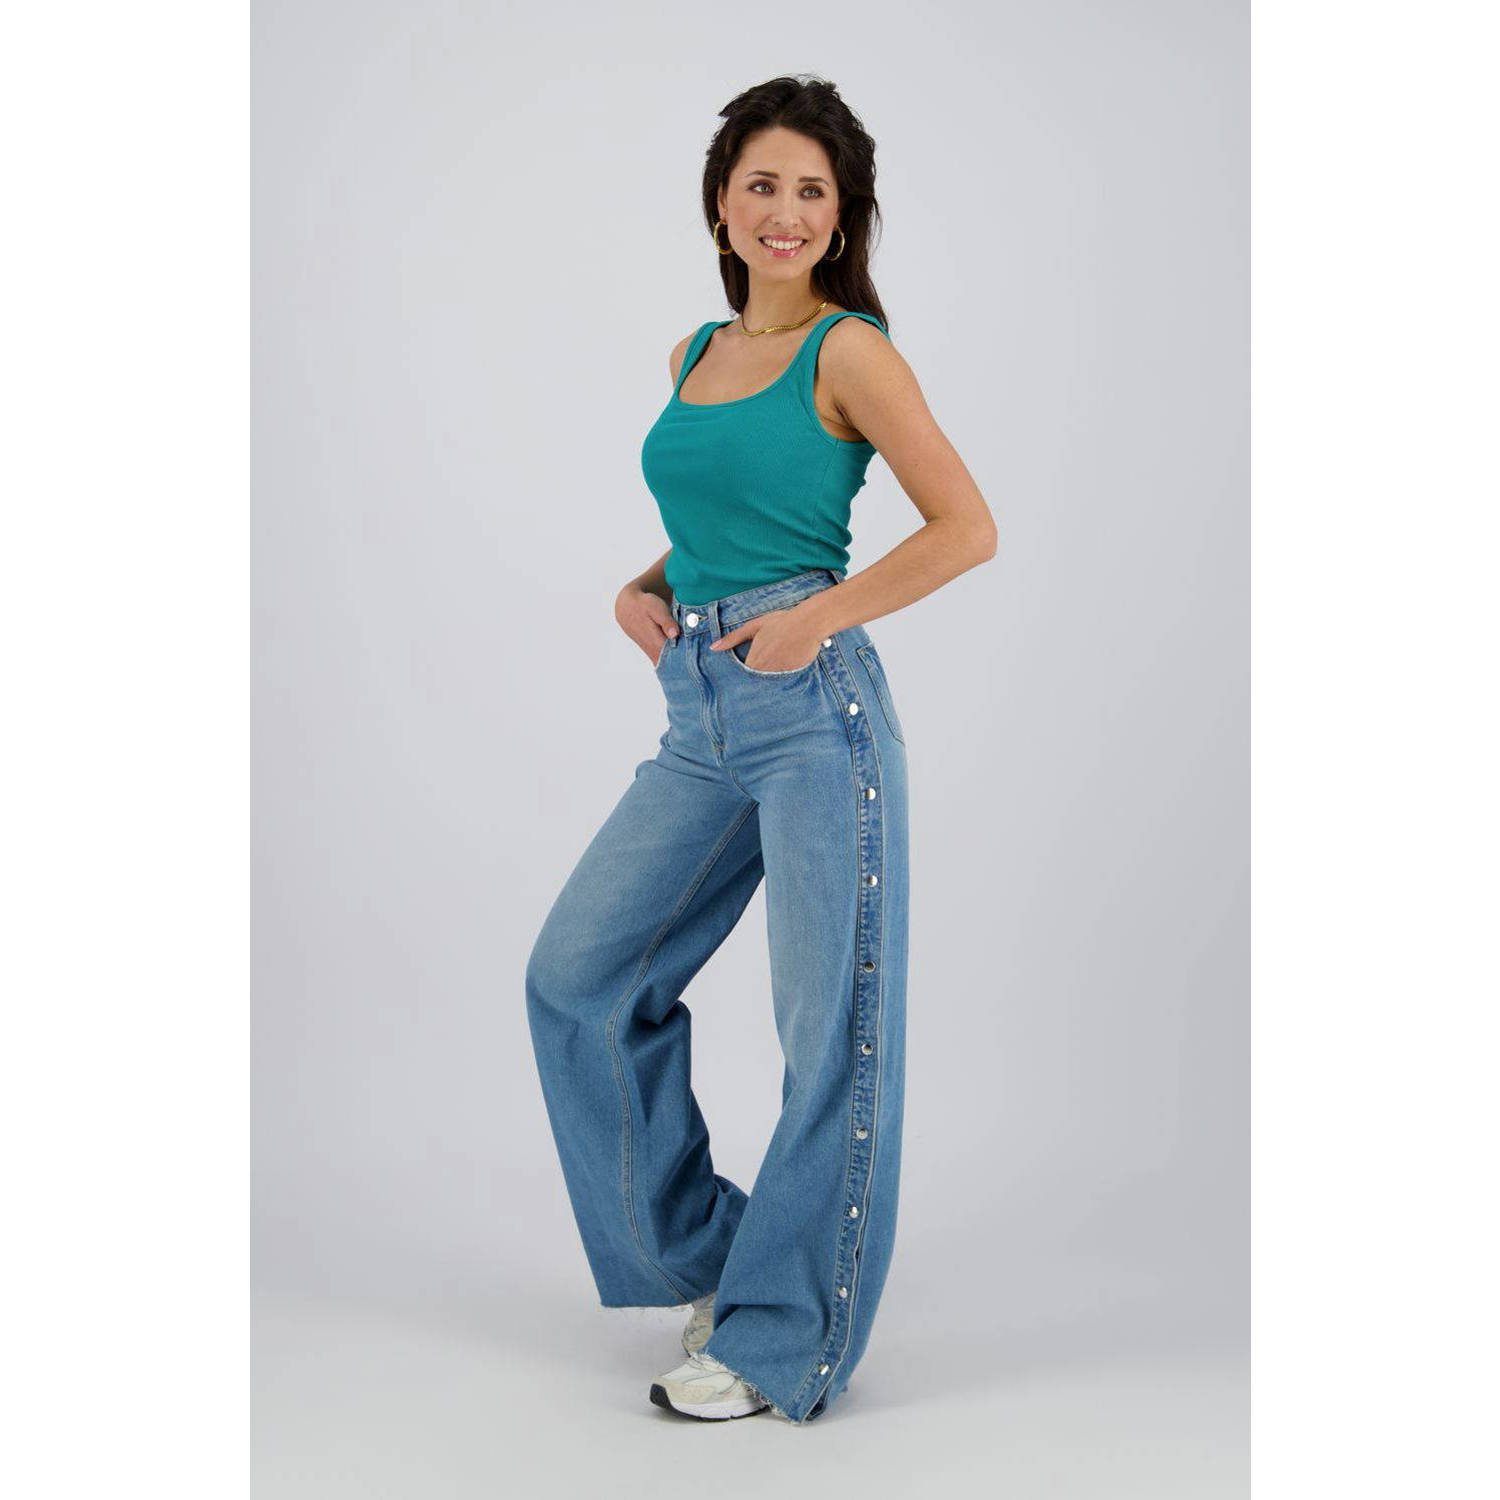 Raizzed high waist wide leg jeans Cenote medium blue denim